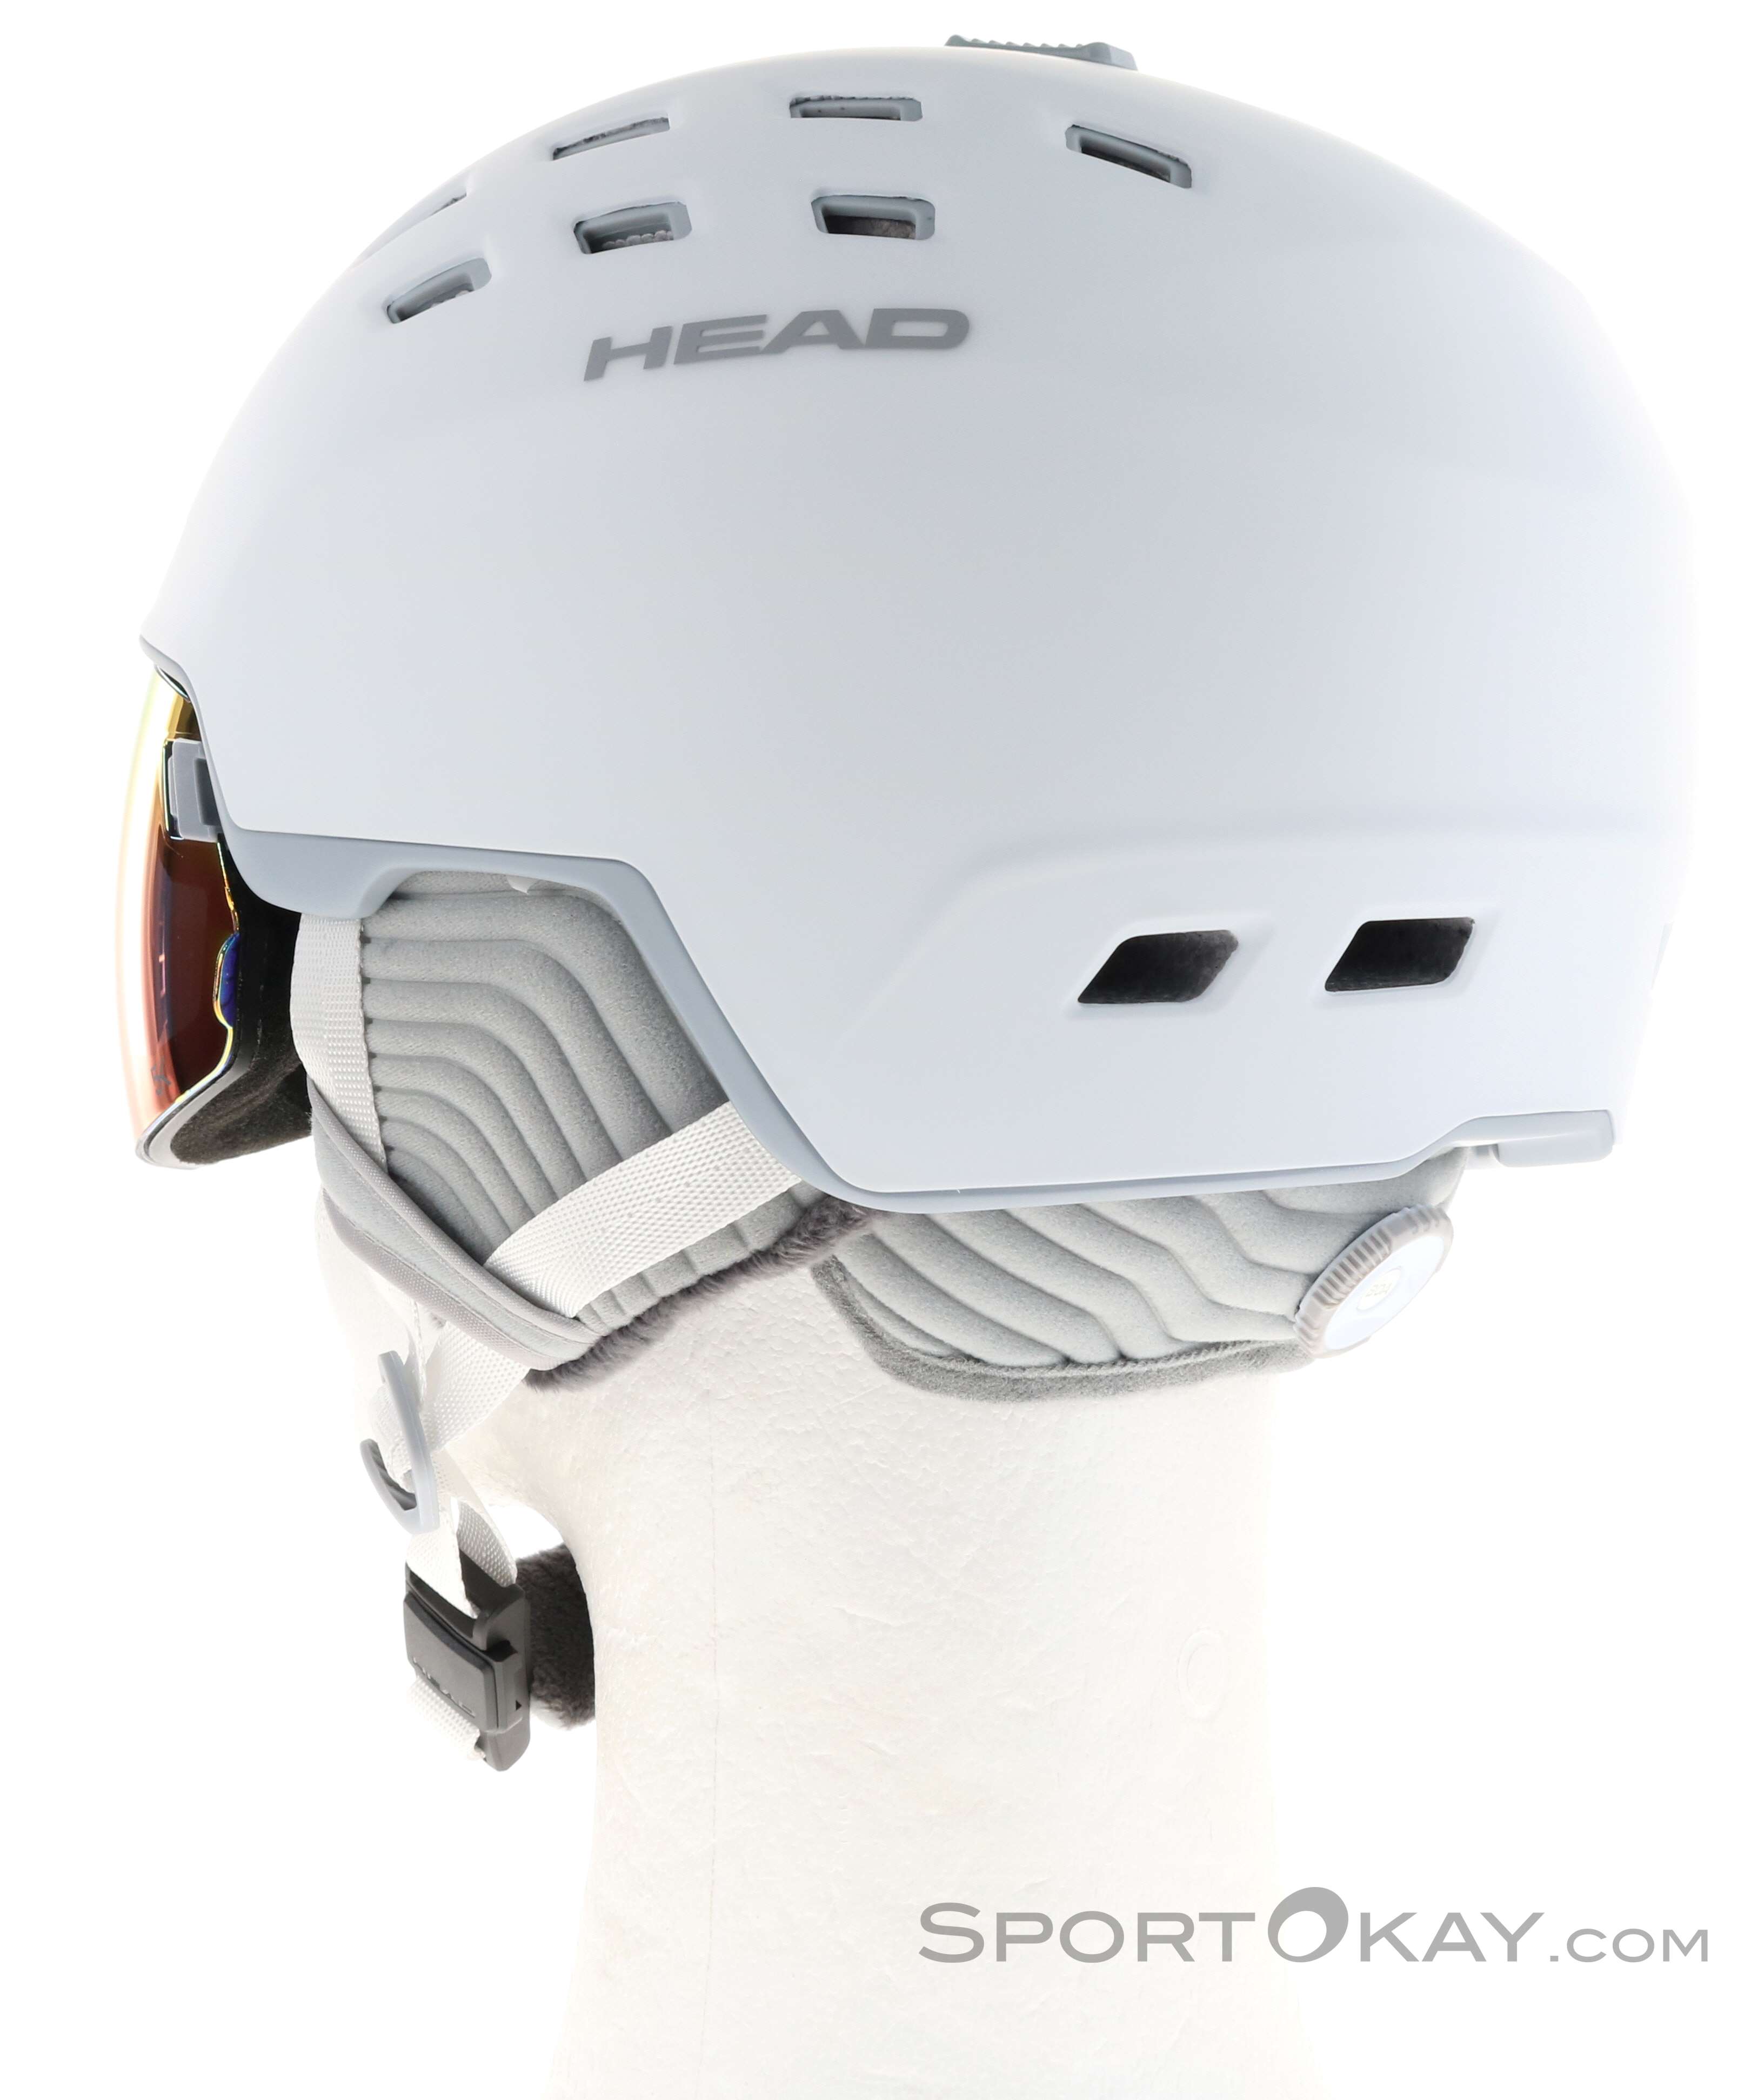 HEAD RACHEL casco de esquí mujer